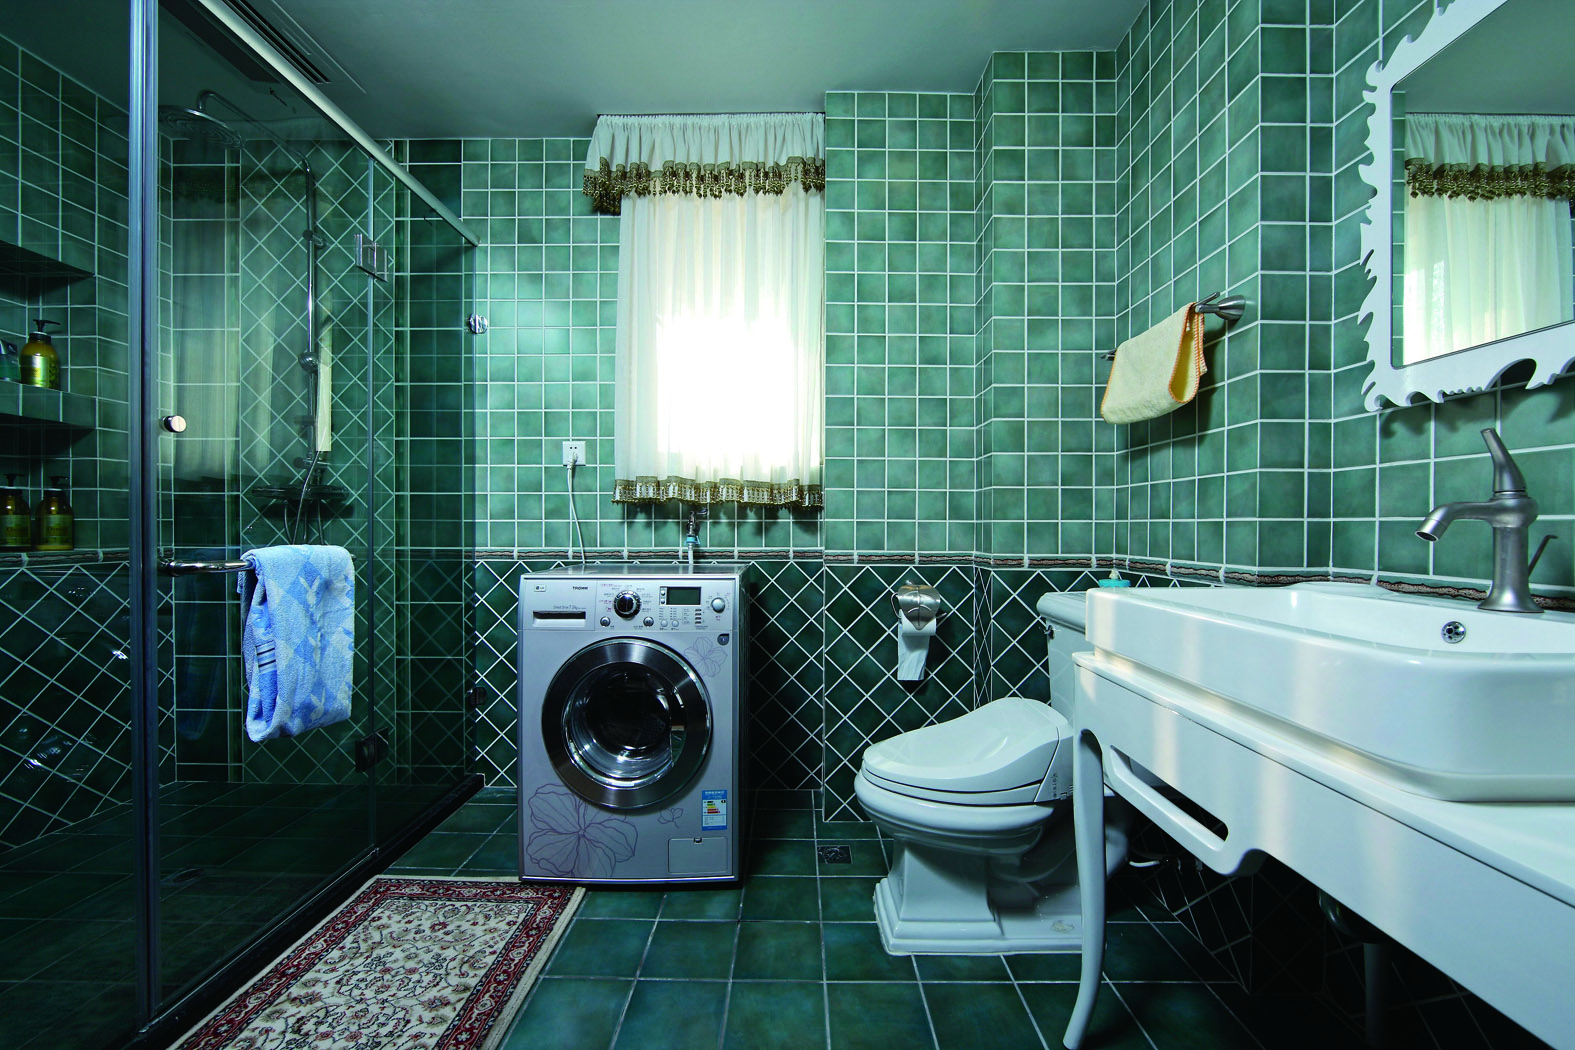 卫浴间做了干湿分离是目前比较推荐的做法，不过小户型可能比较难实现。